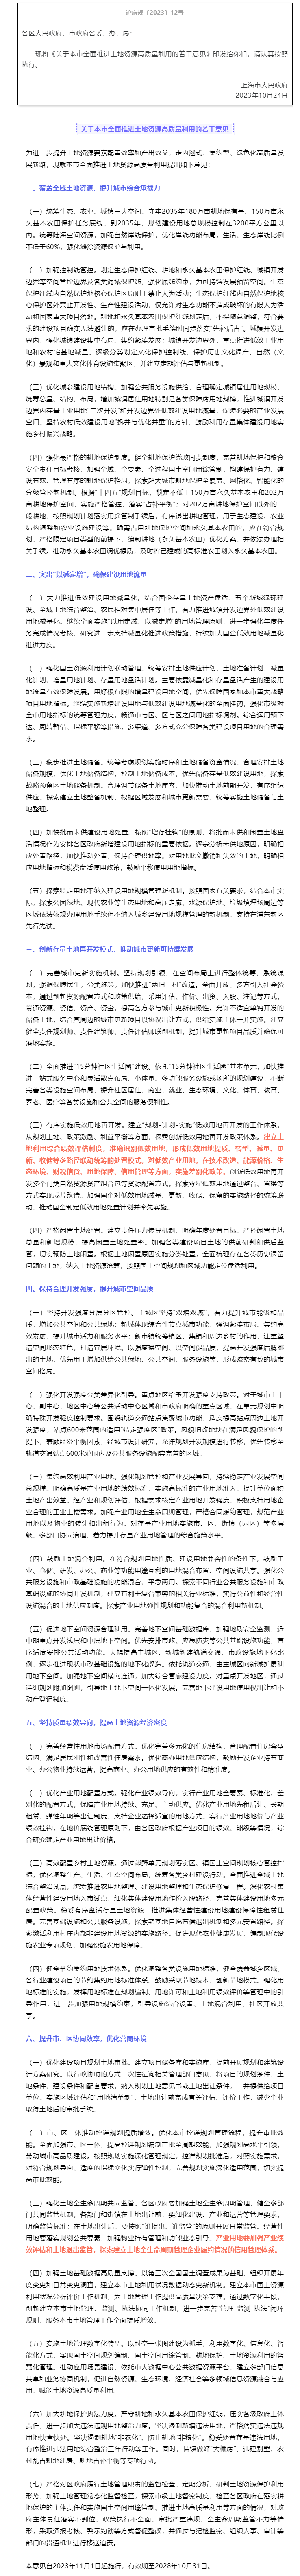 上海市人民政府印发修订后的《关于本市全面推进土地资源高质量利用的若干意见》的通知.png